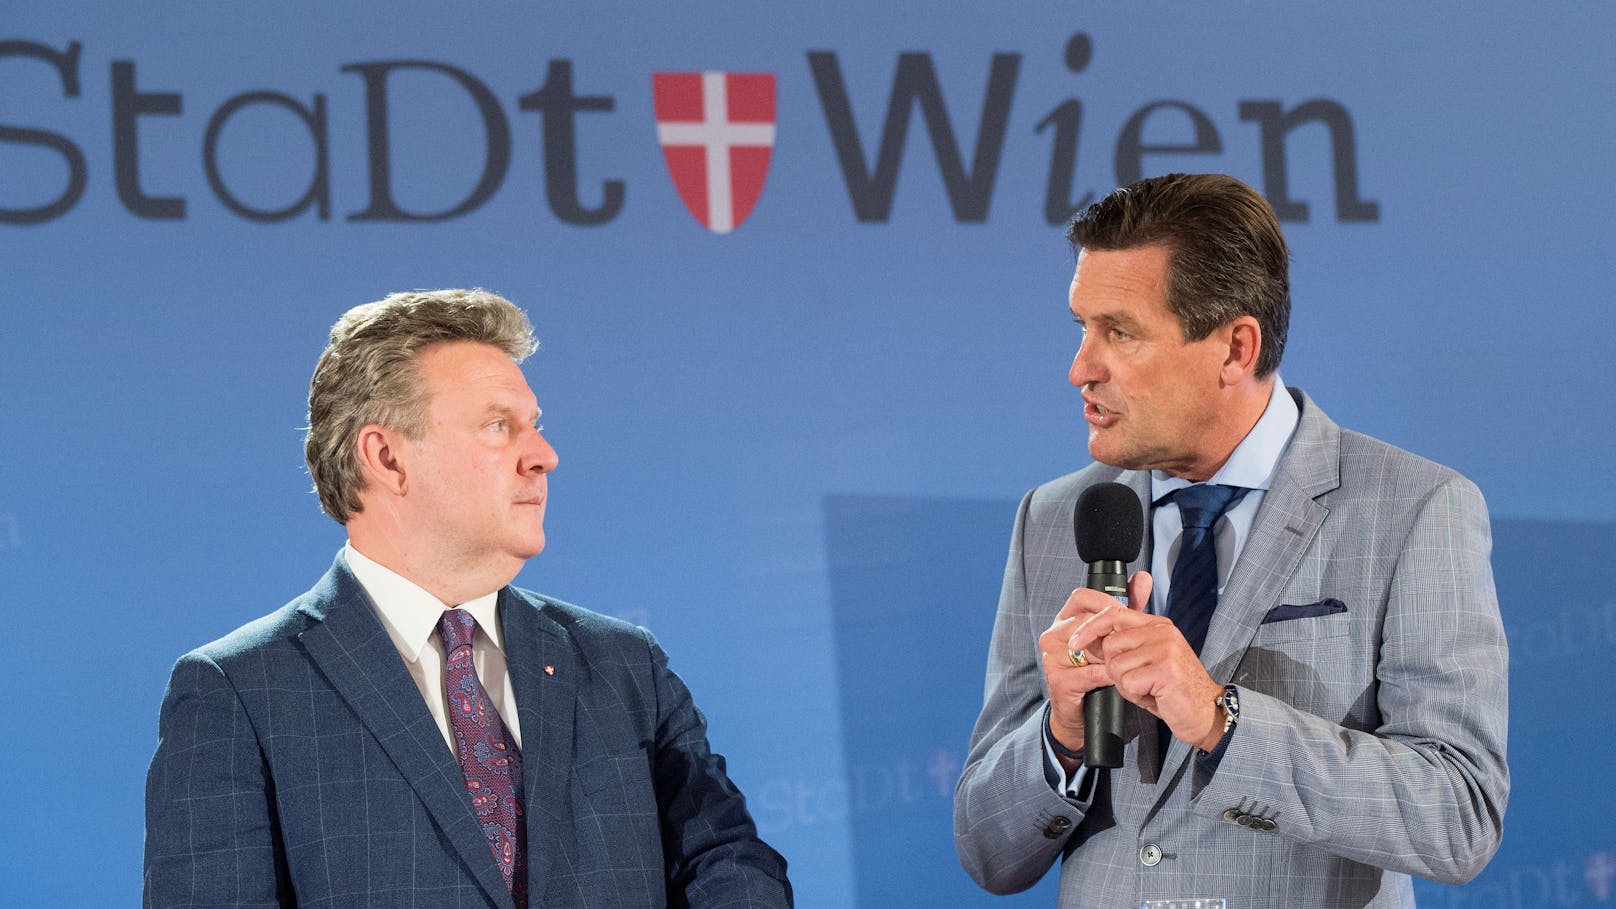 Wien schnürt Doppelbudget über 40 Milliarden Euro